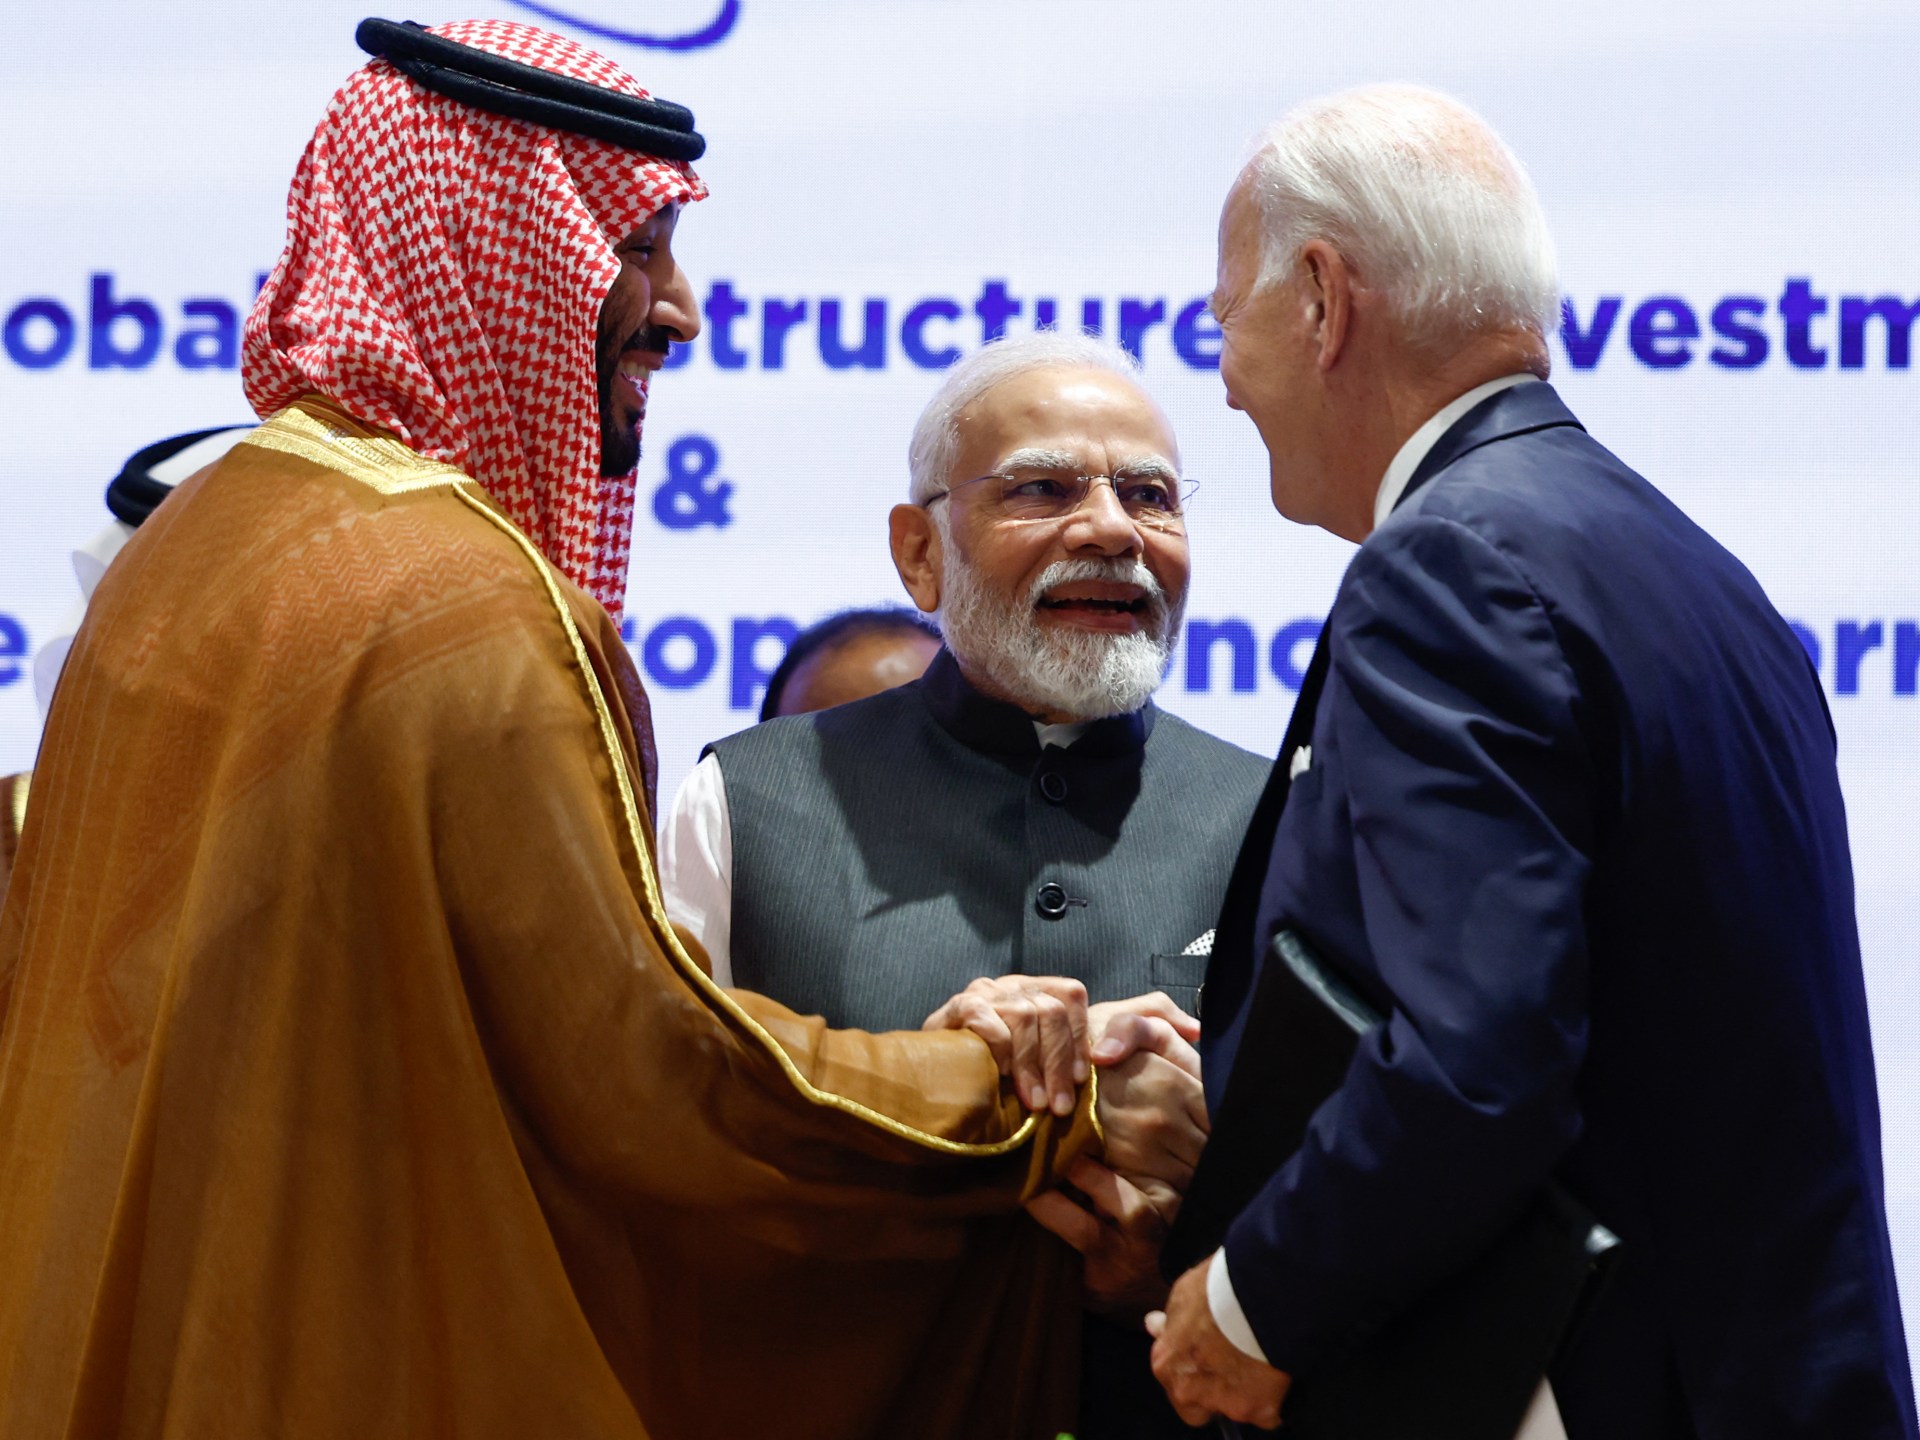 Cimeira do G20: Plano de transportes para ligar a Índia ao Médio Oriente e Europa é revelado |  notícias